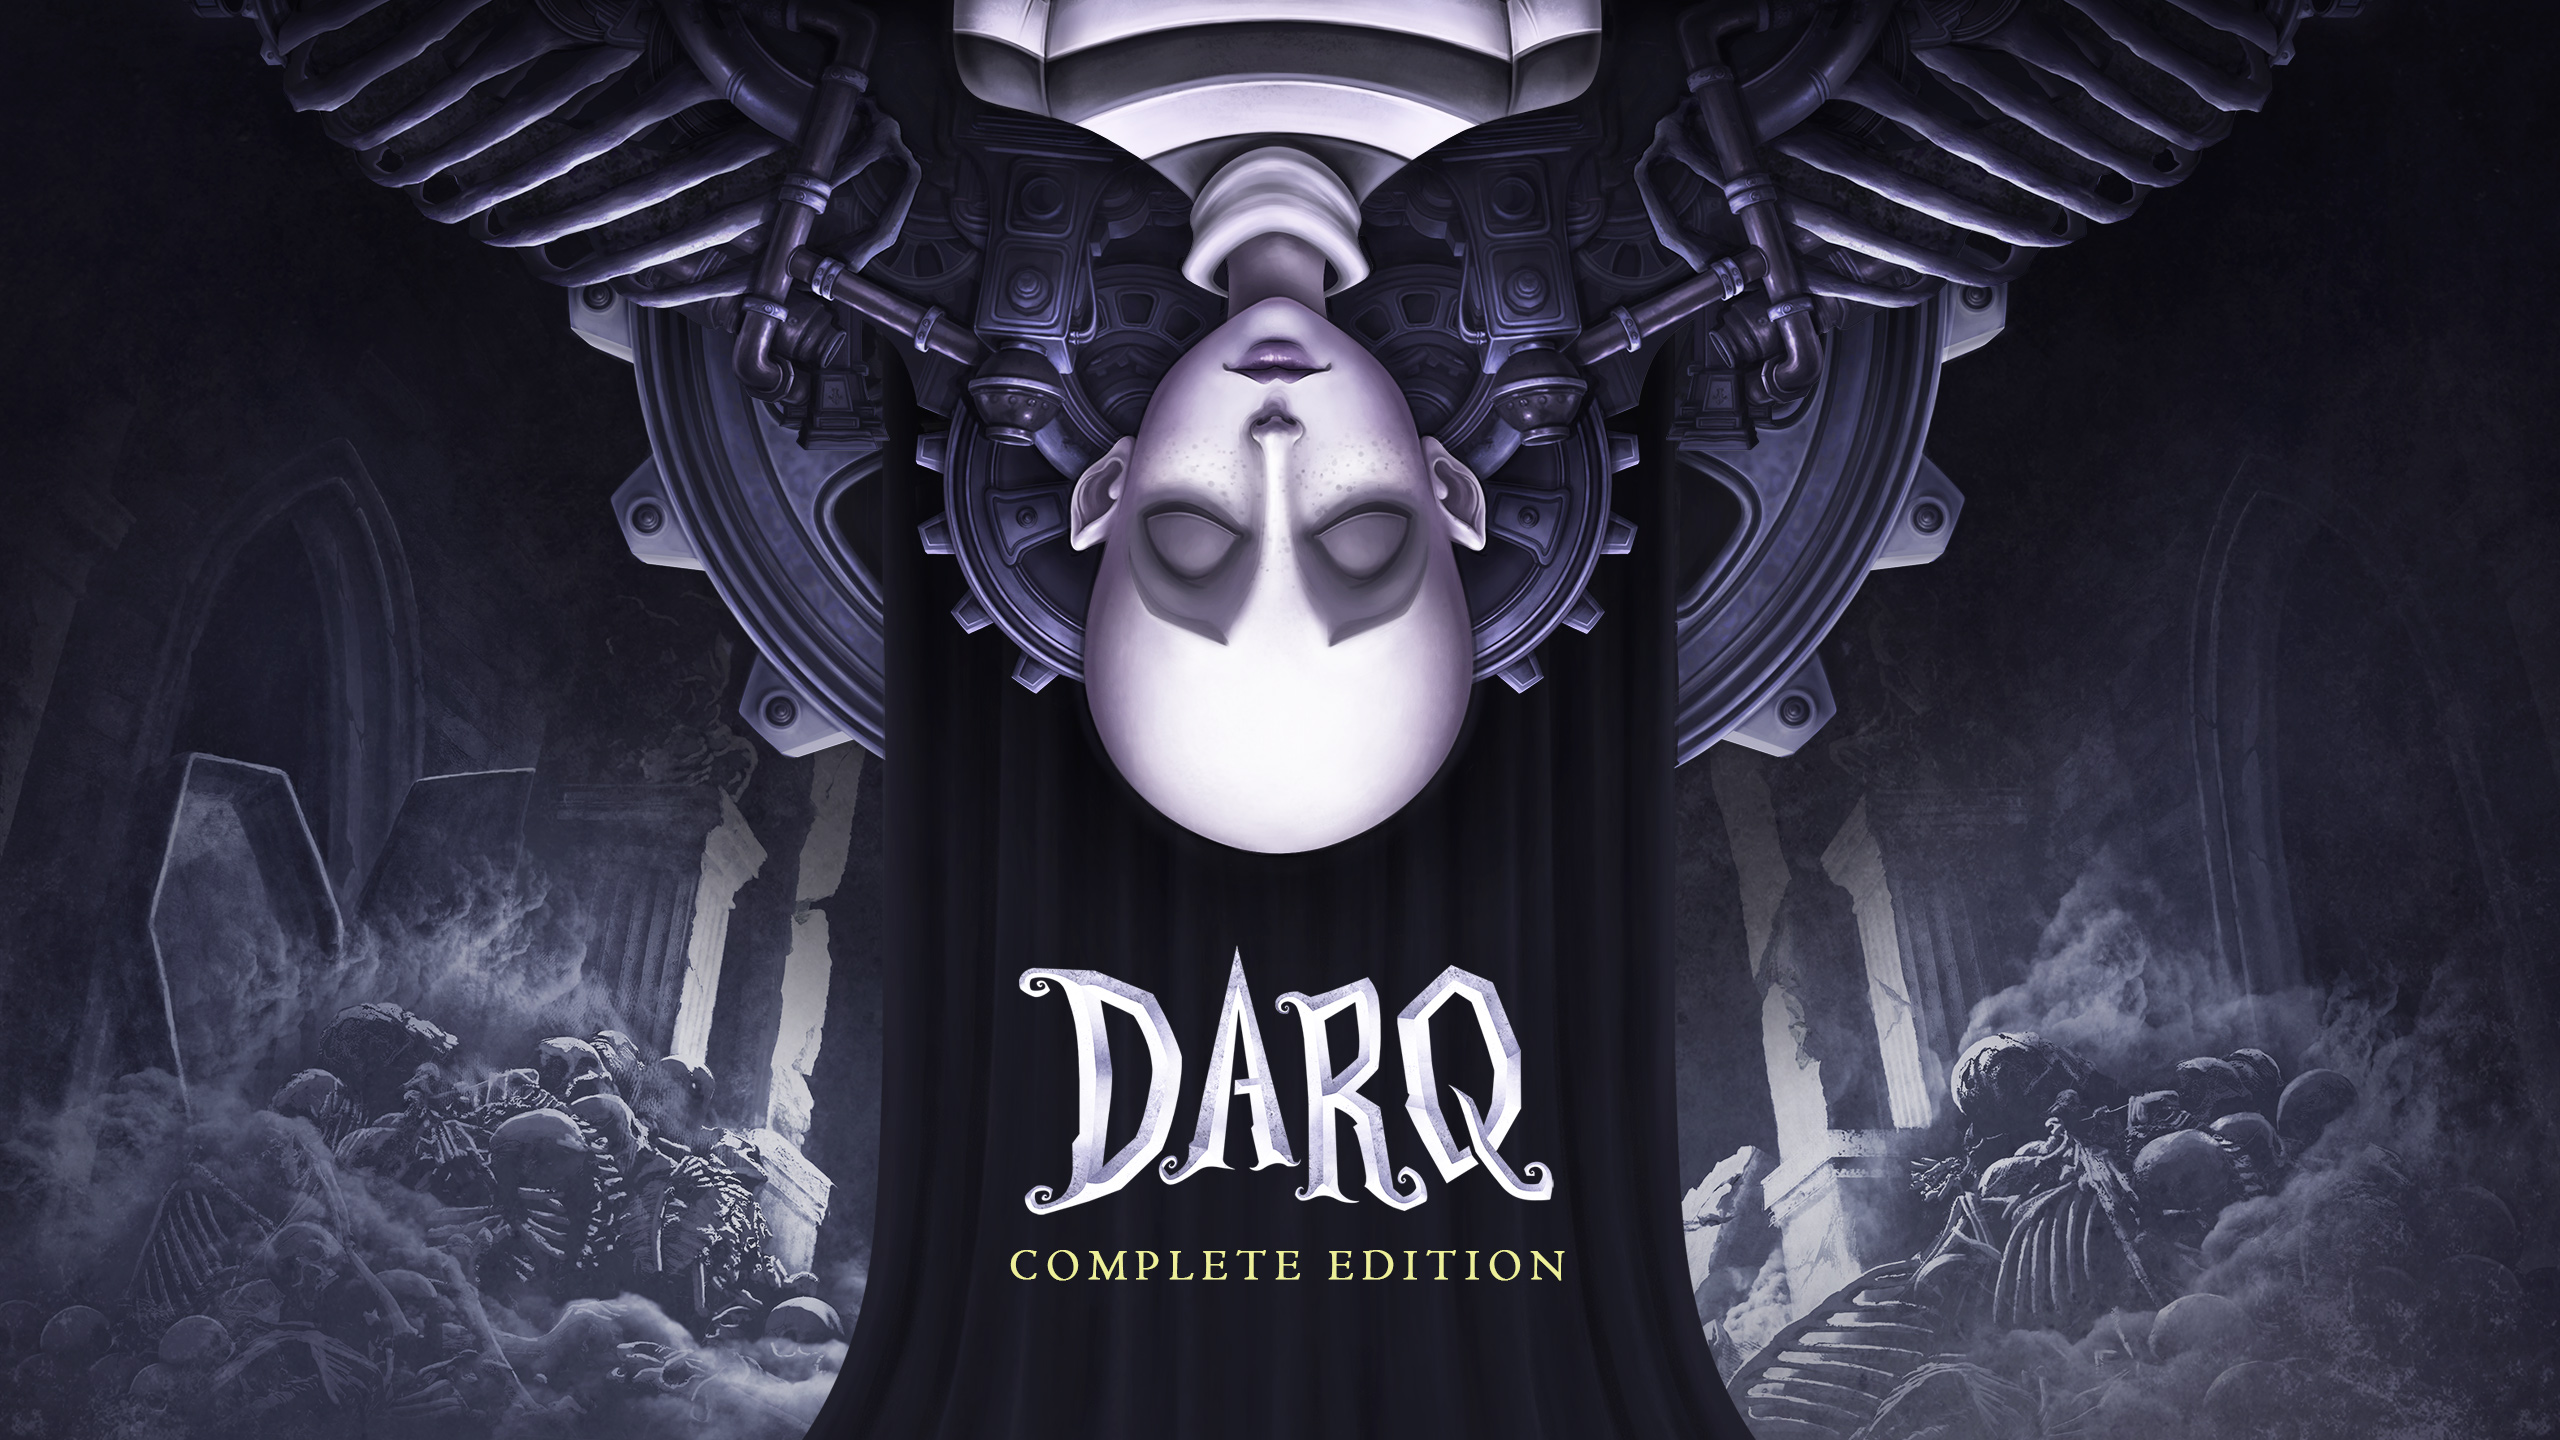 DARQ Complete Edition za darmo w Epic Games Store